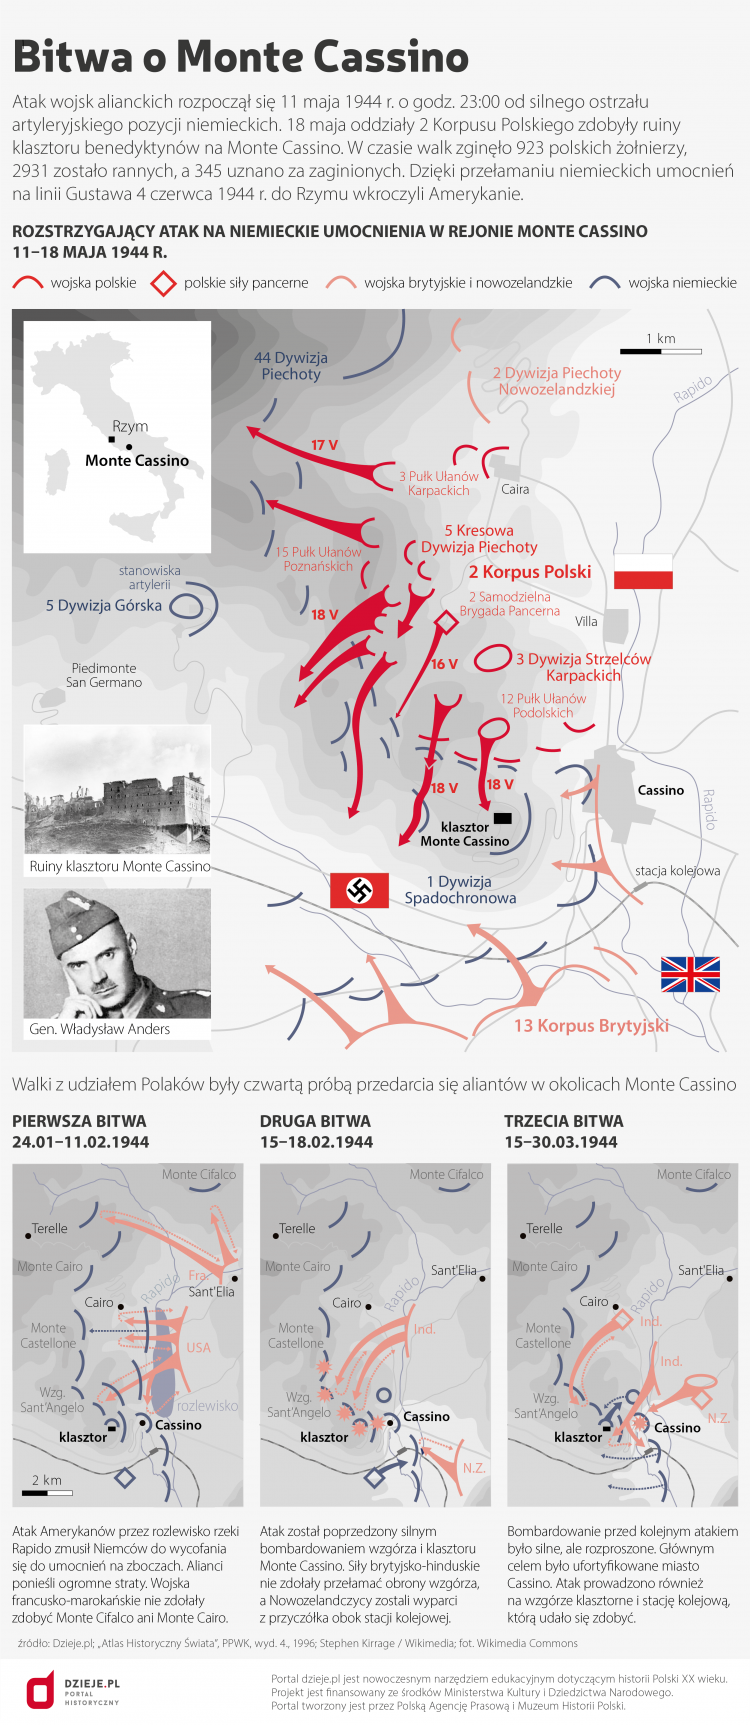 Bitwa o Monte Cassino. Źródło: Infografika PAP